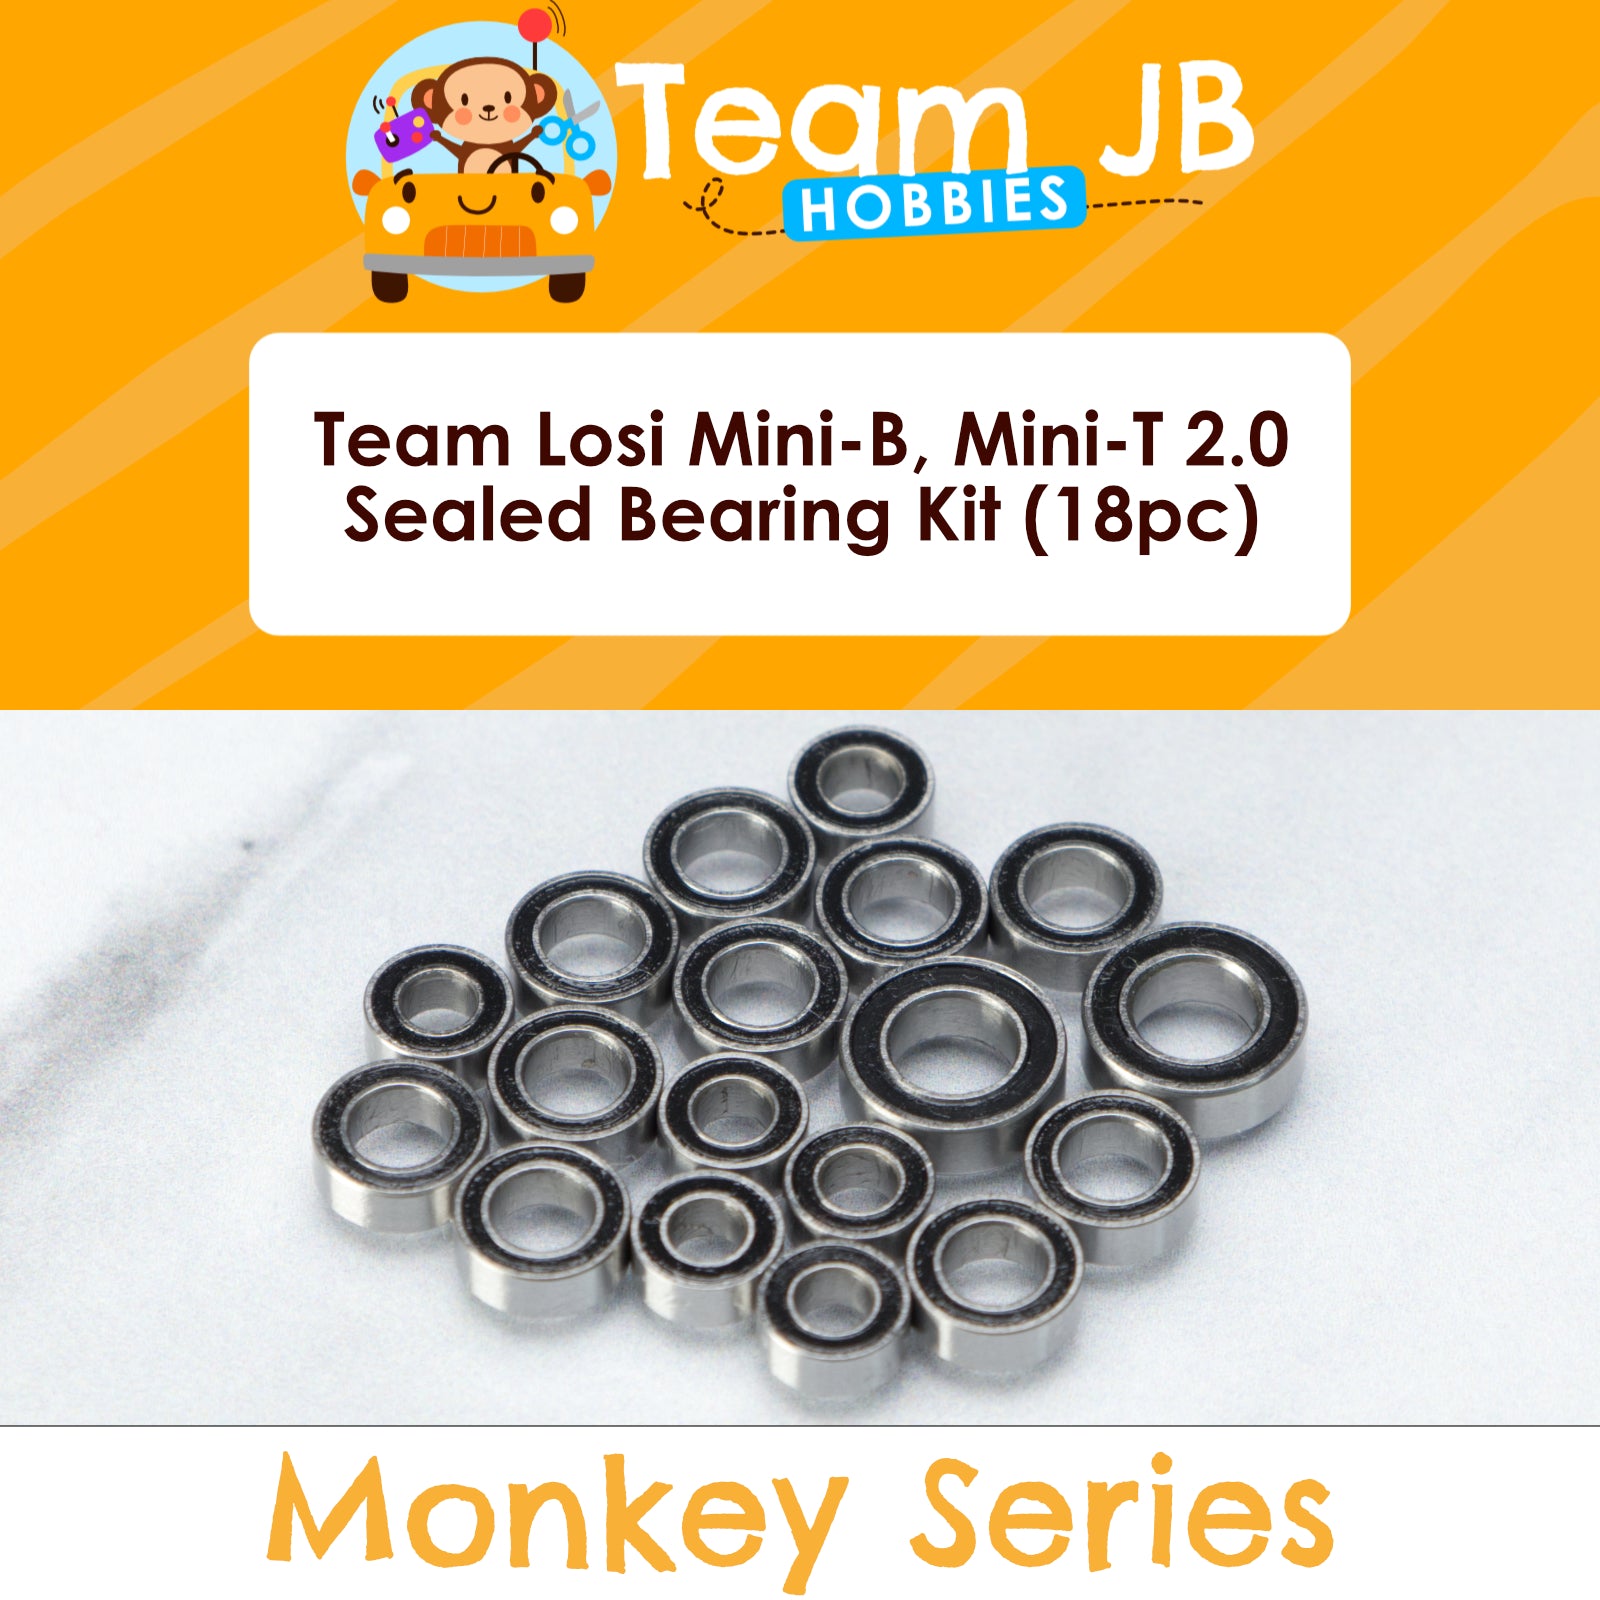 Team Losi Mini-B Brushed/Pro Roller, Mini-T 2.0 Brushed/Brushless - Sealed Bearing Kit